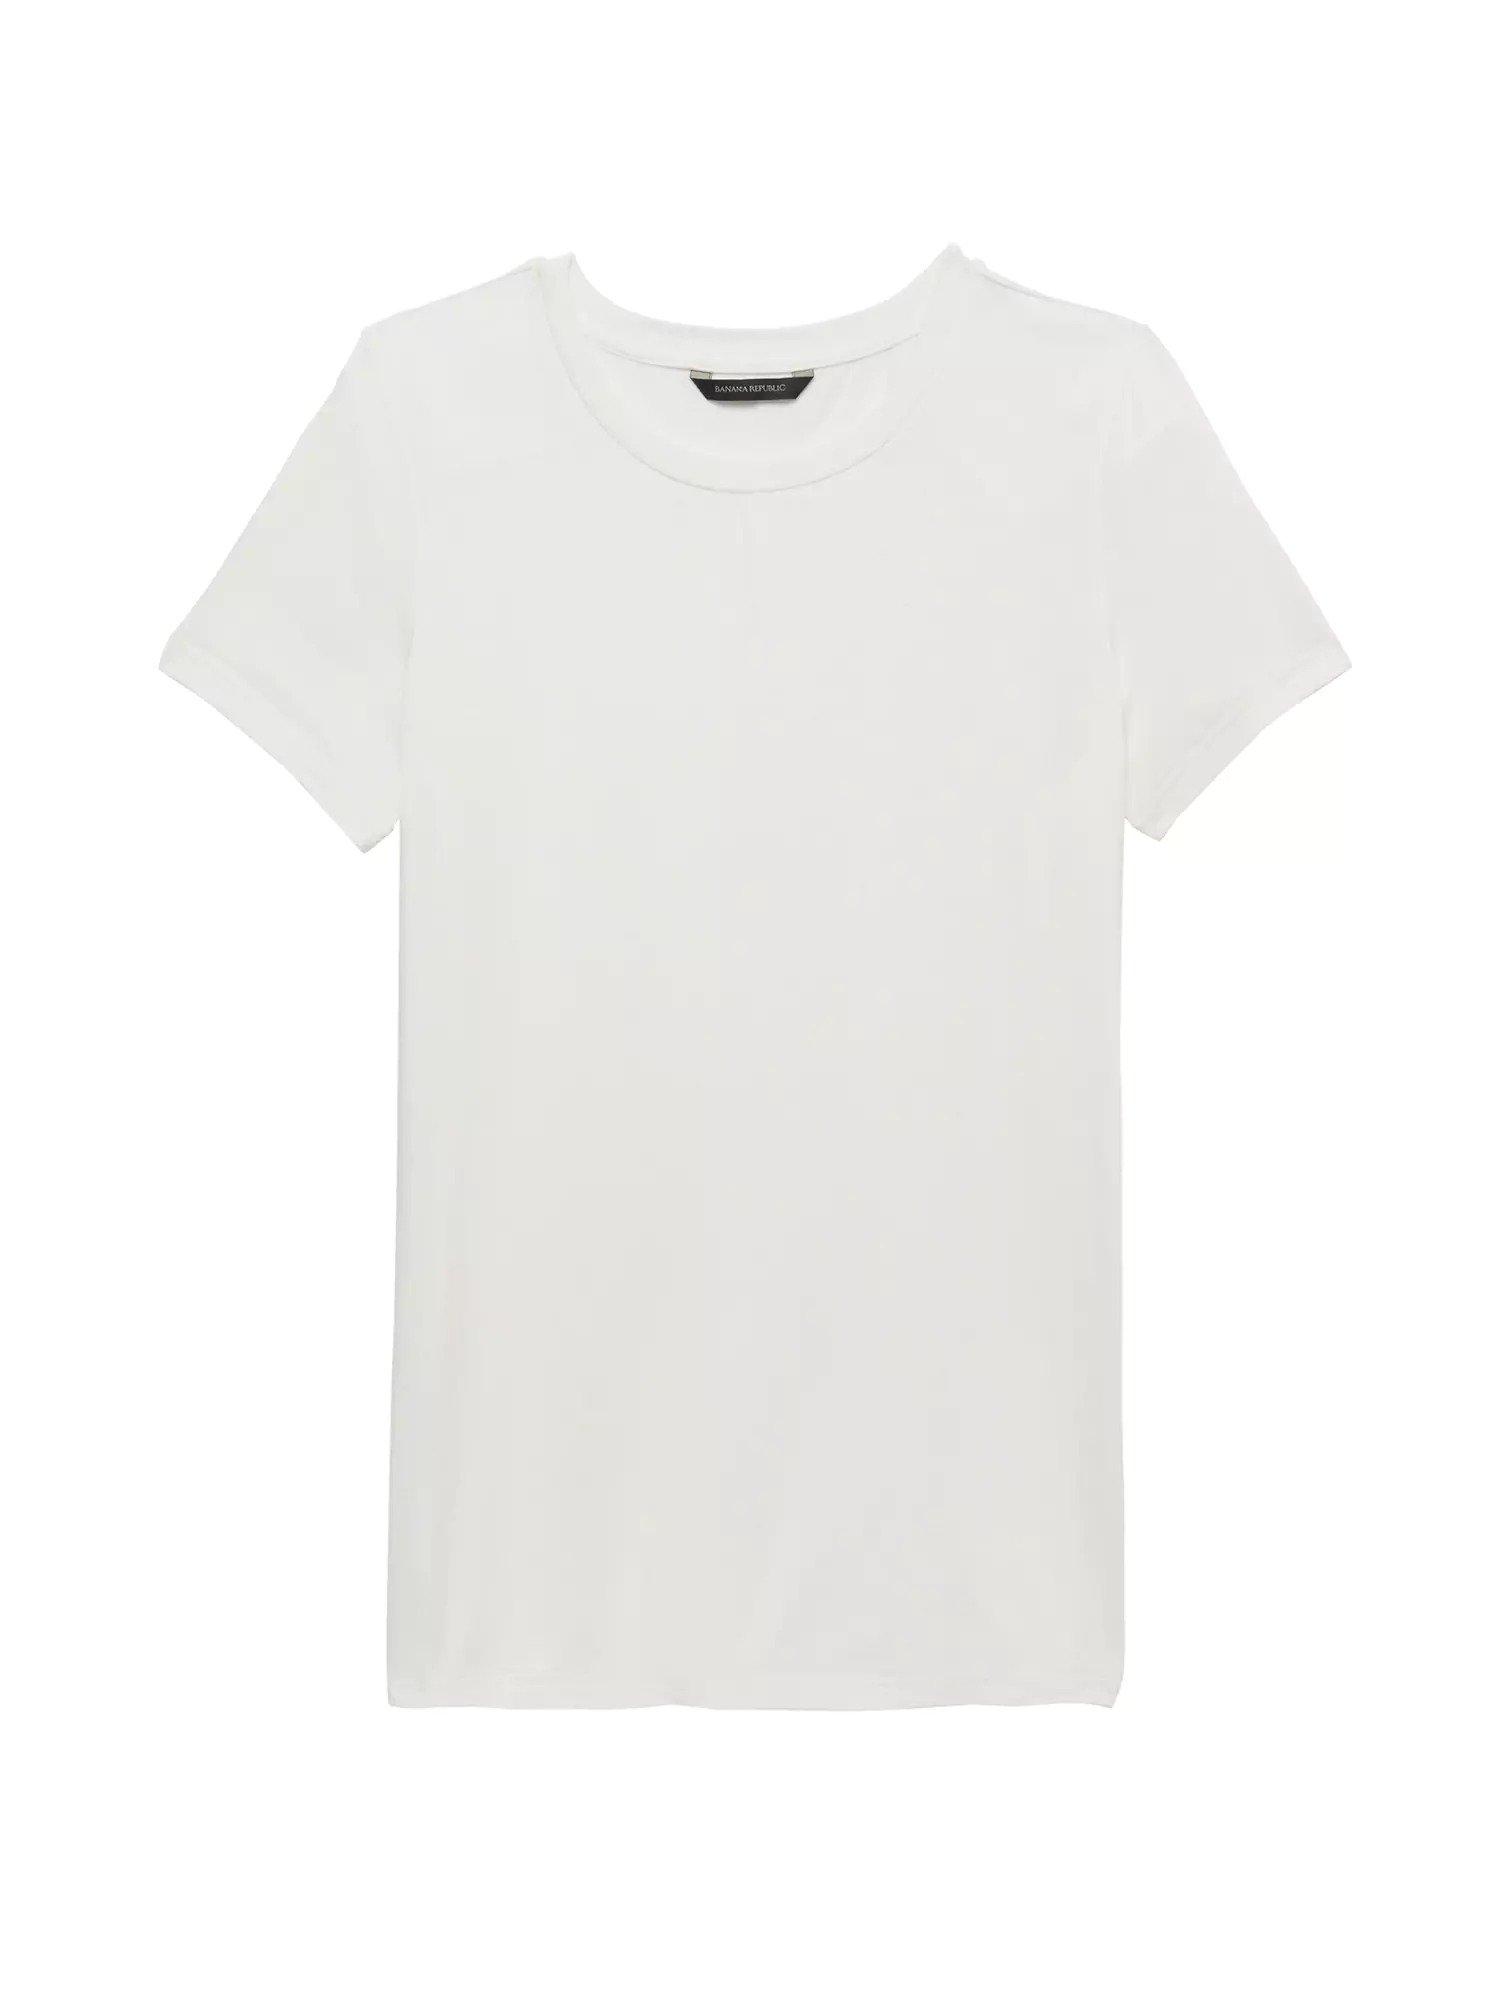 Streç-Modal Kısa Kollu Tunik T-Shirt product image